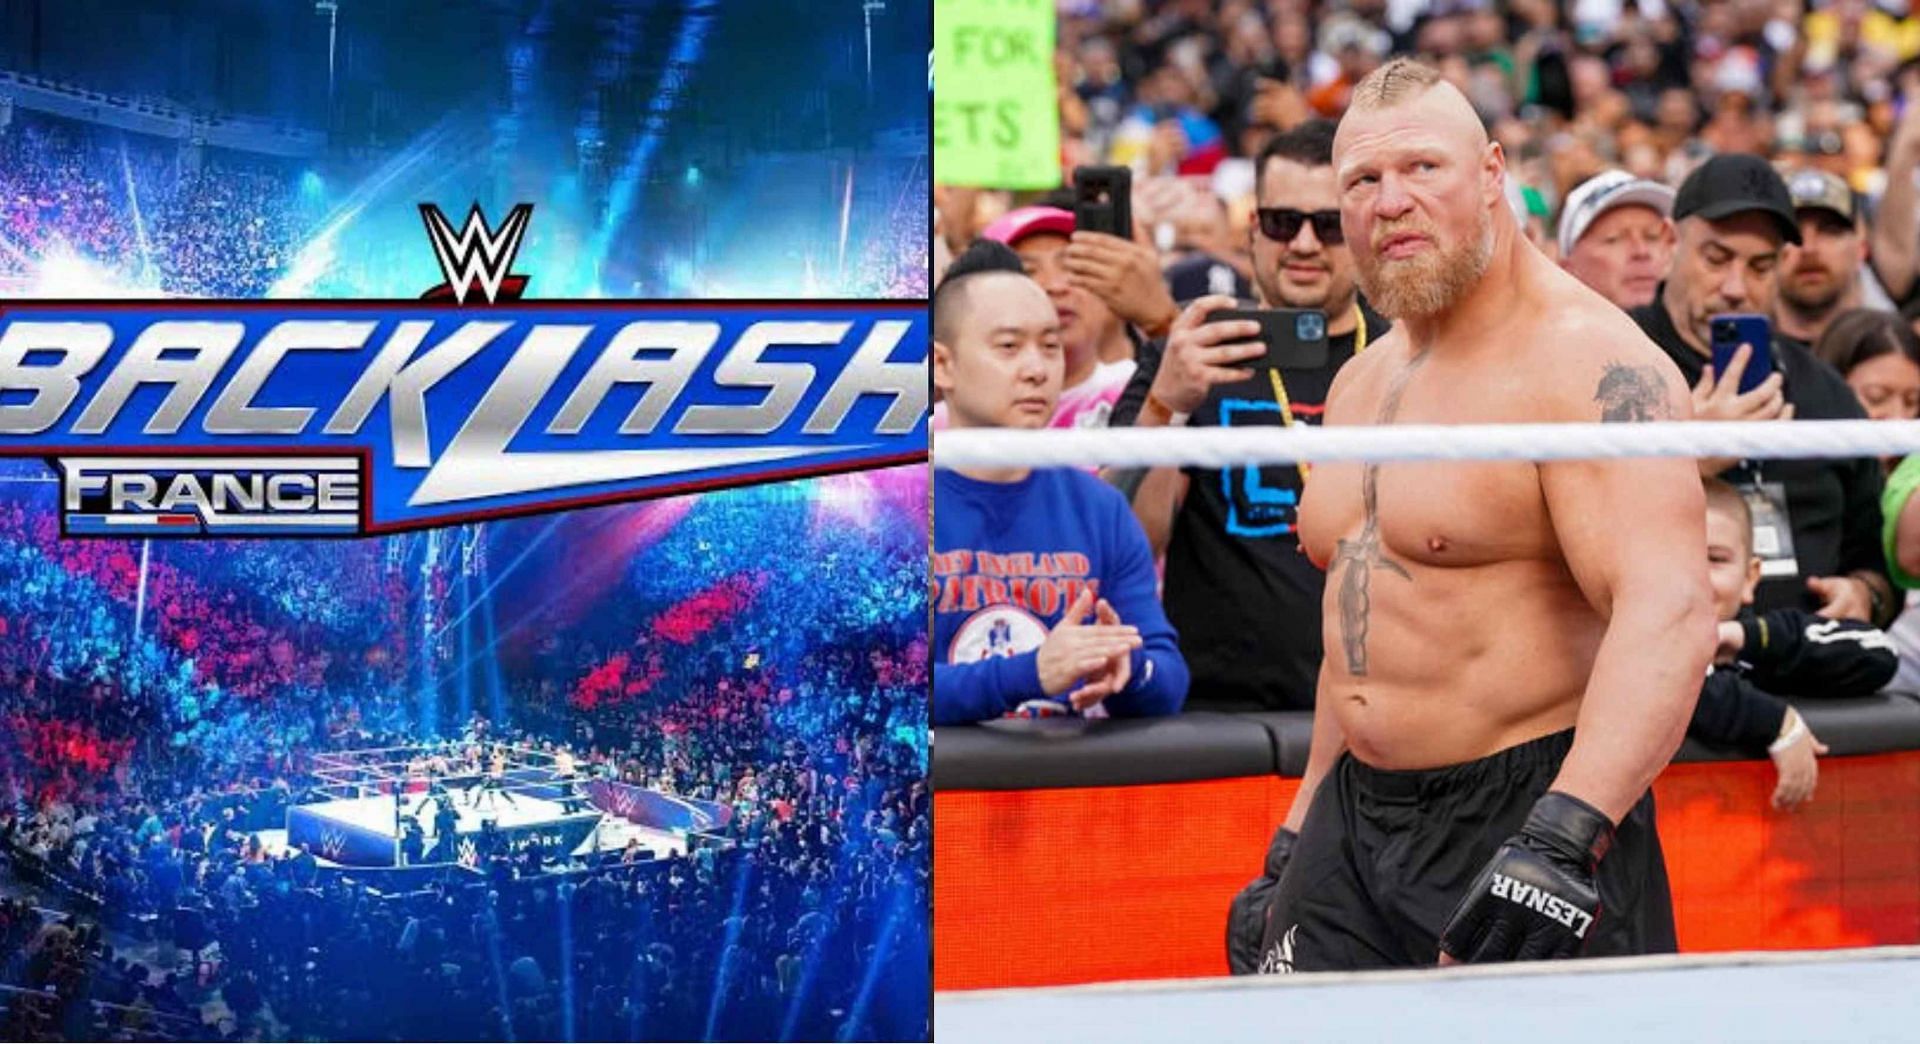 क्या होगा जब WWE Backlash France में ब्रॉक लैसनर एंट्री करेंगे?